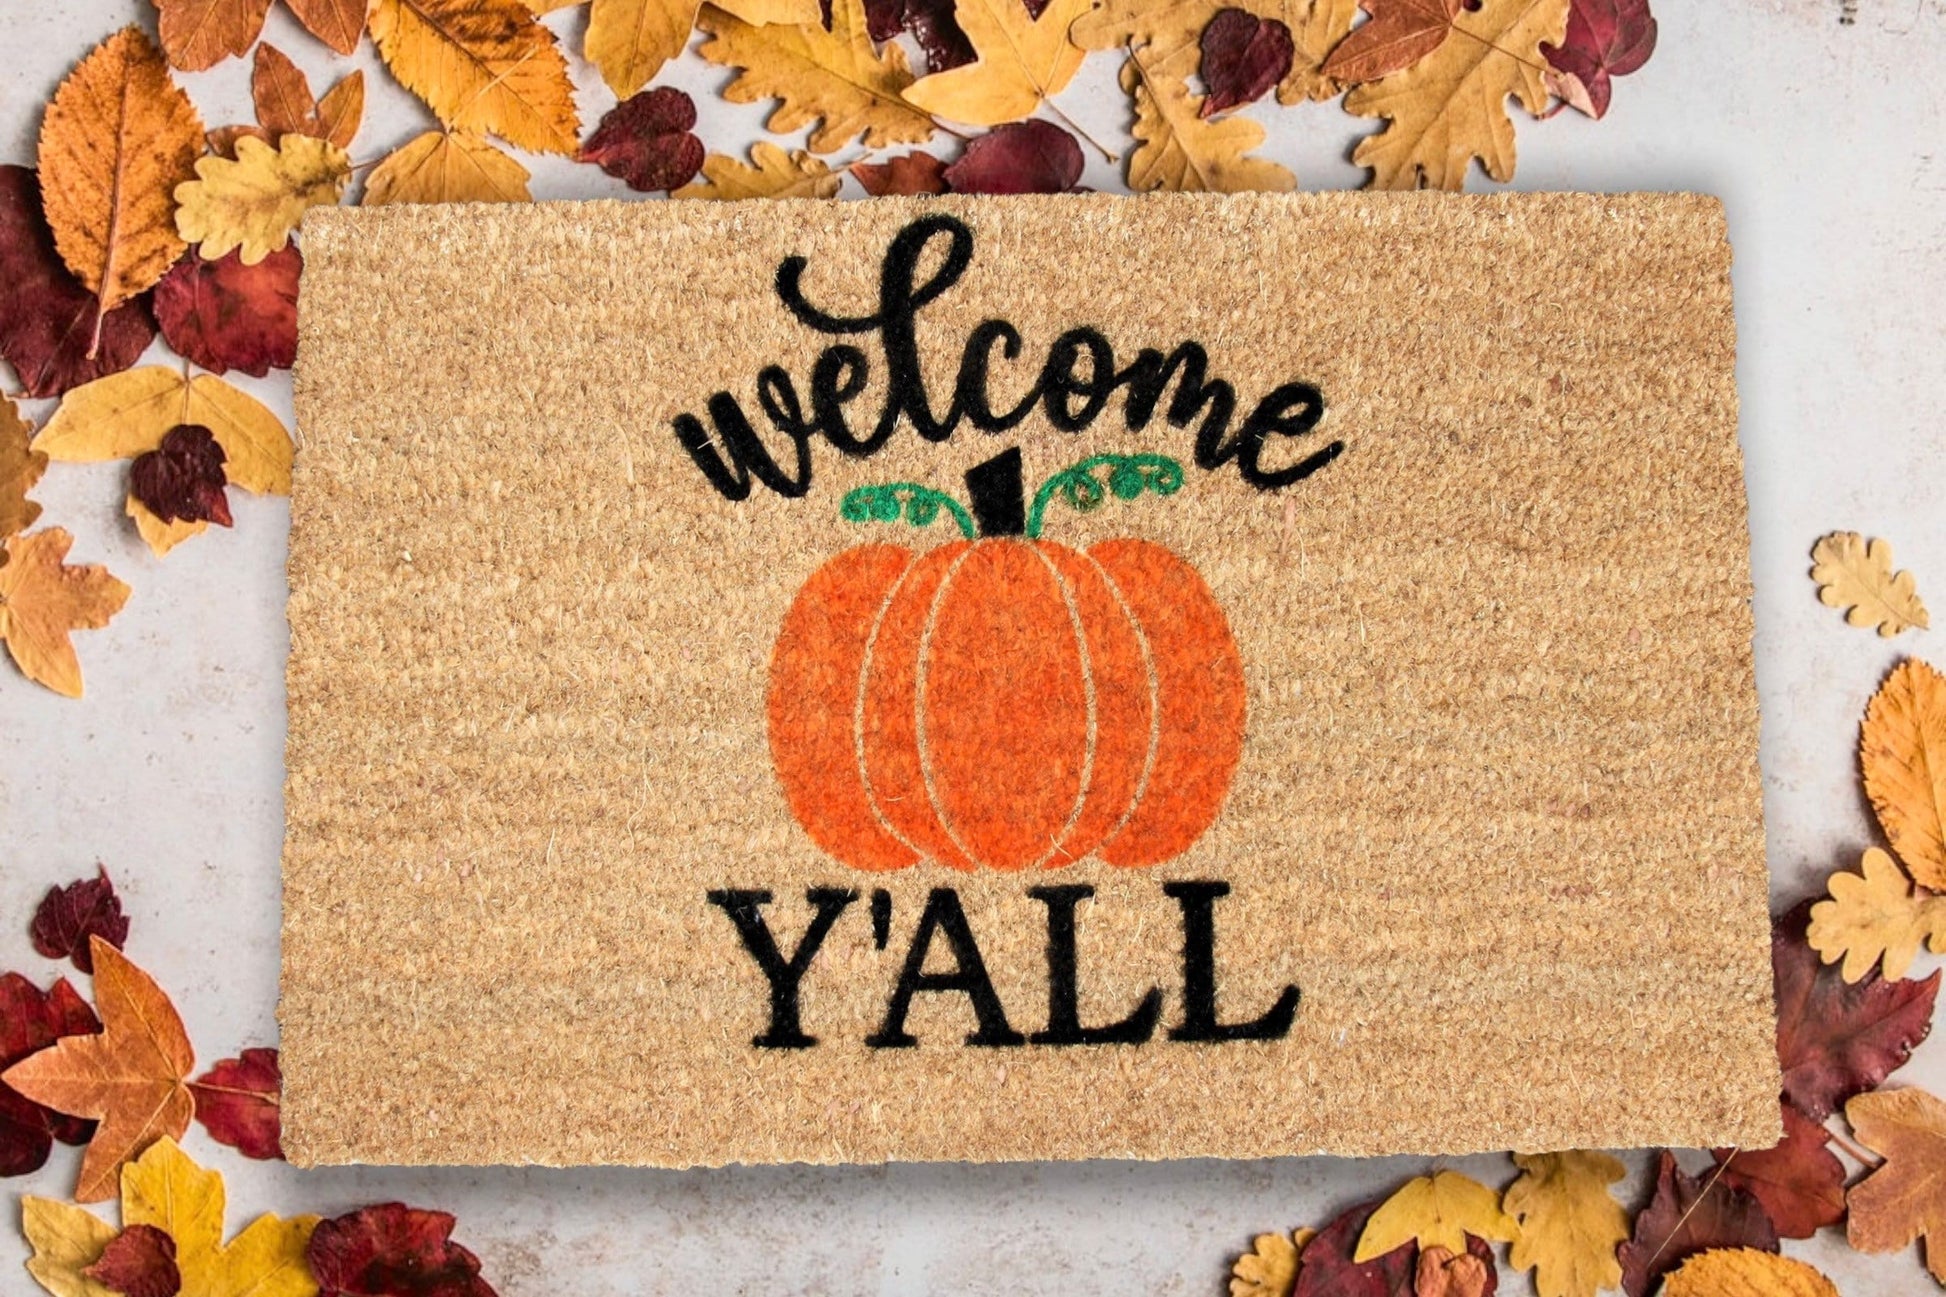 Welcome Pumpkin Pattern Door Mat | Fall Doormat | Welcome Mat | Cute  Pumpkin Fall Door Mat | Fall Autumn Decor Gift | Home Doormat